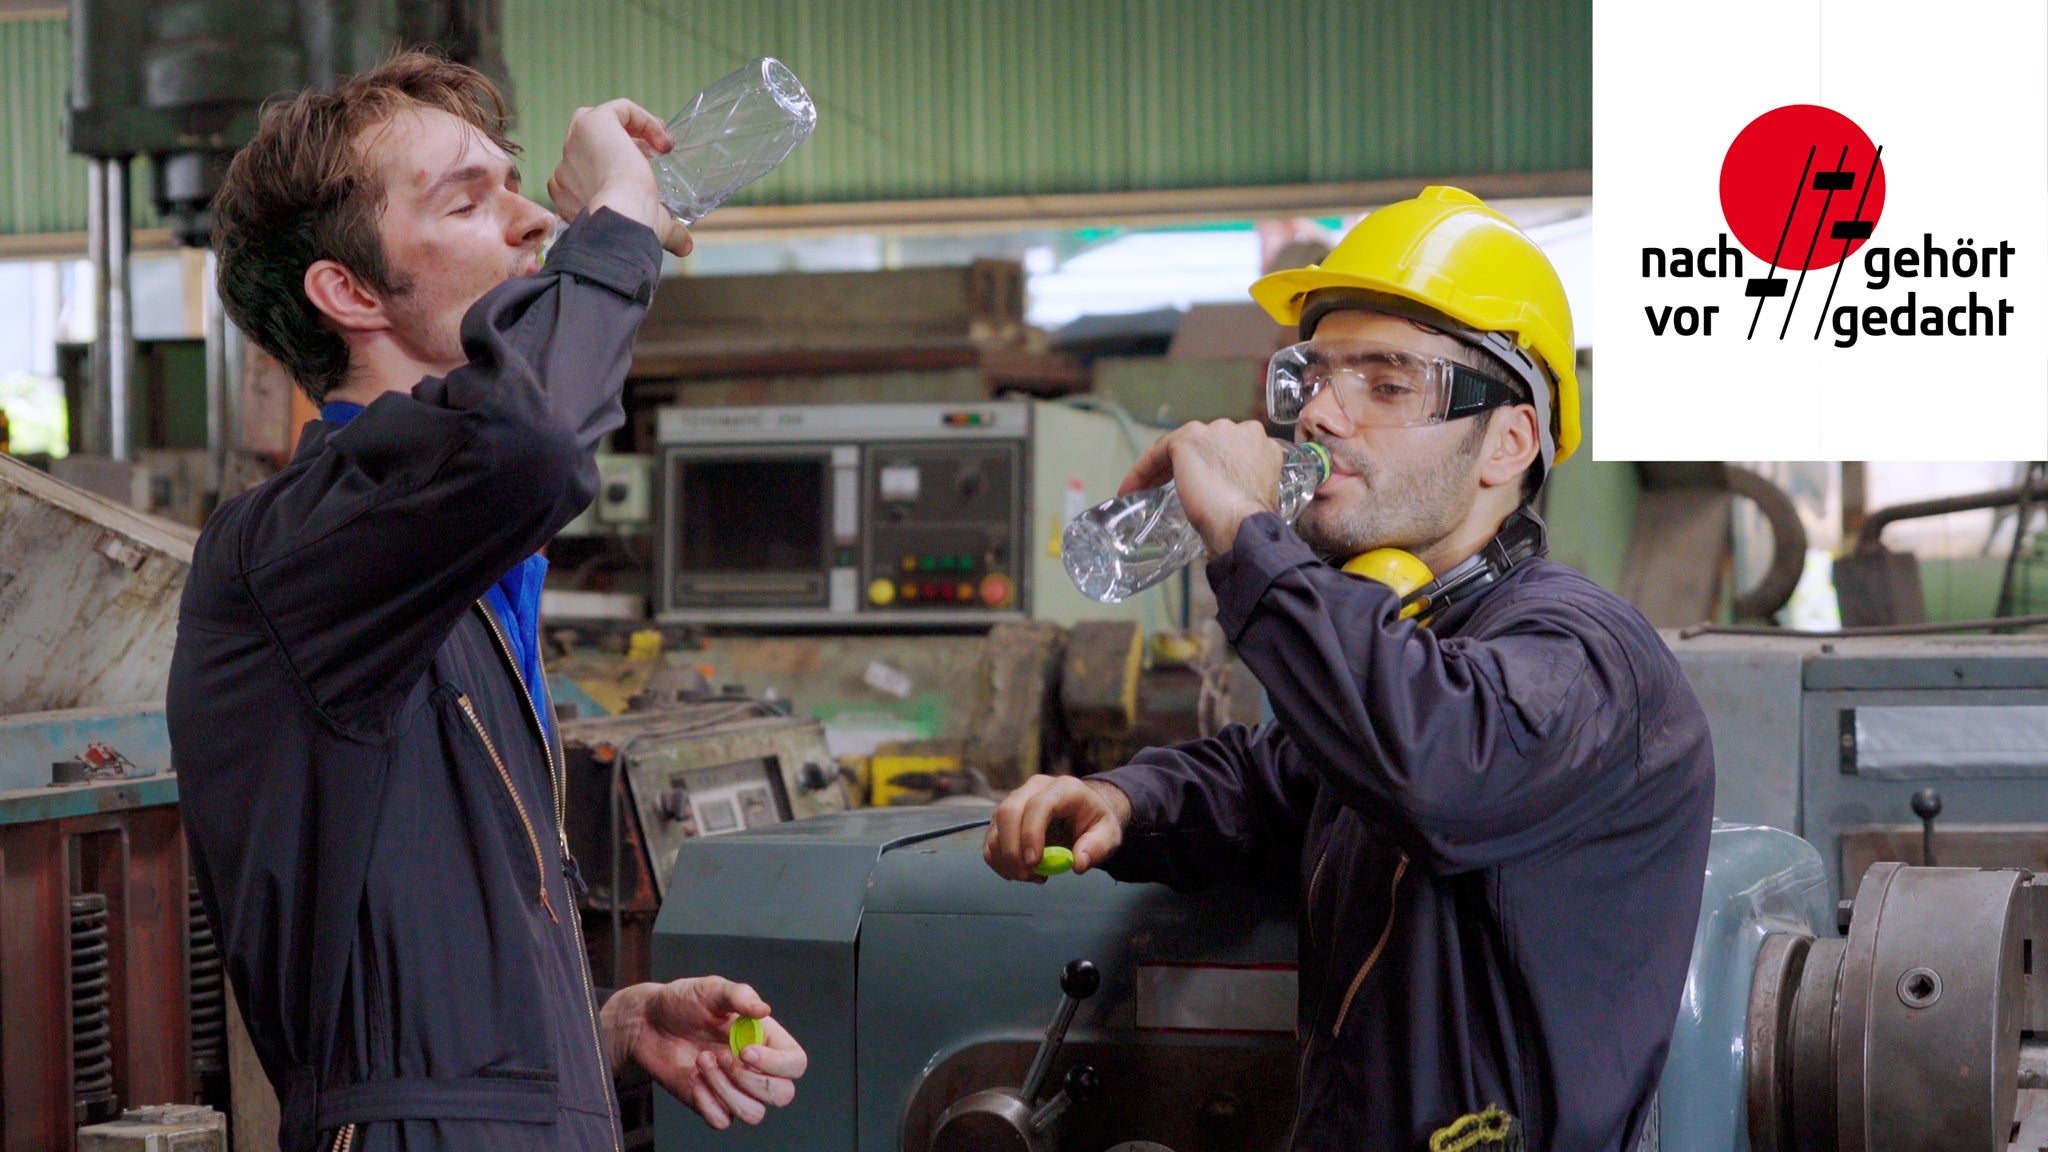 Zwei Arbeiter in Arbeitsschutzkleidung stehen in einer Fabrikhalle und trinken Wasser. In der rechten oberen Ecke ist das "nachgehört - vorgedacht" Podcast Logo platziert